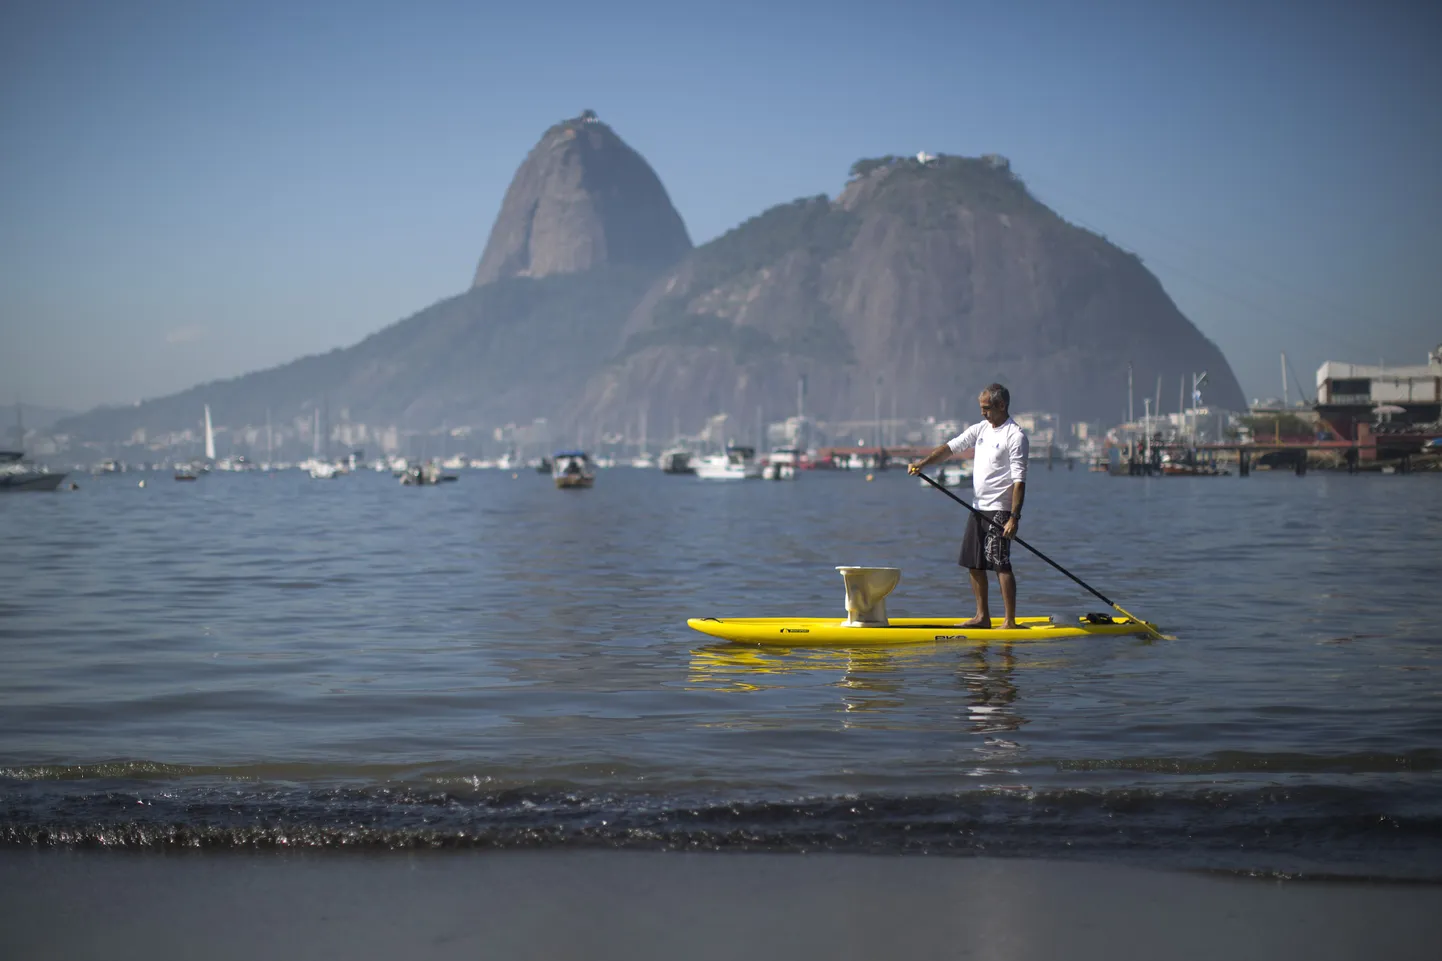 Rio purjeregatt võib toimuda üsna räpastes oludes